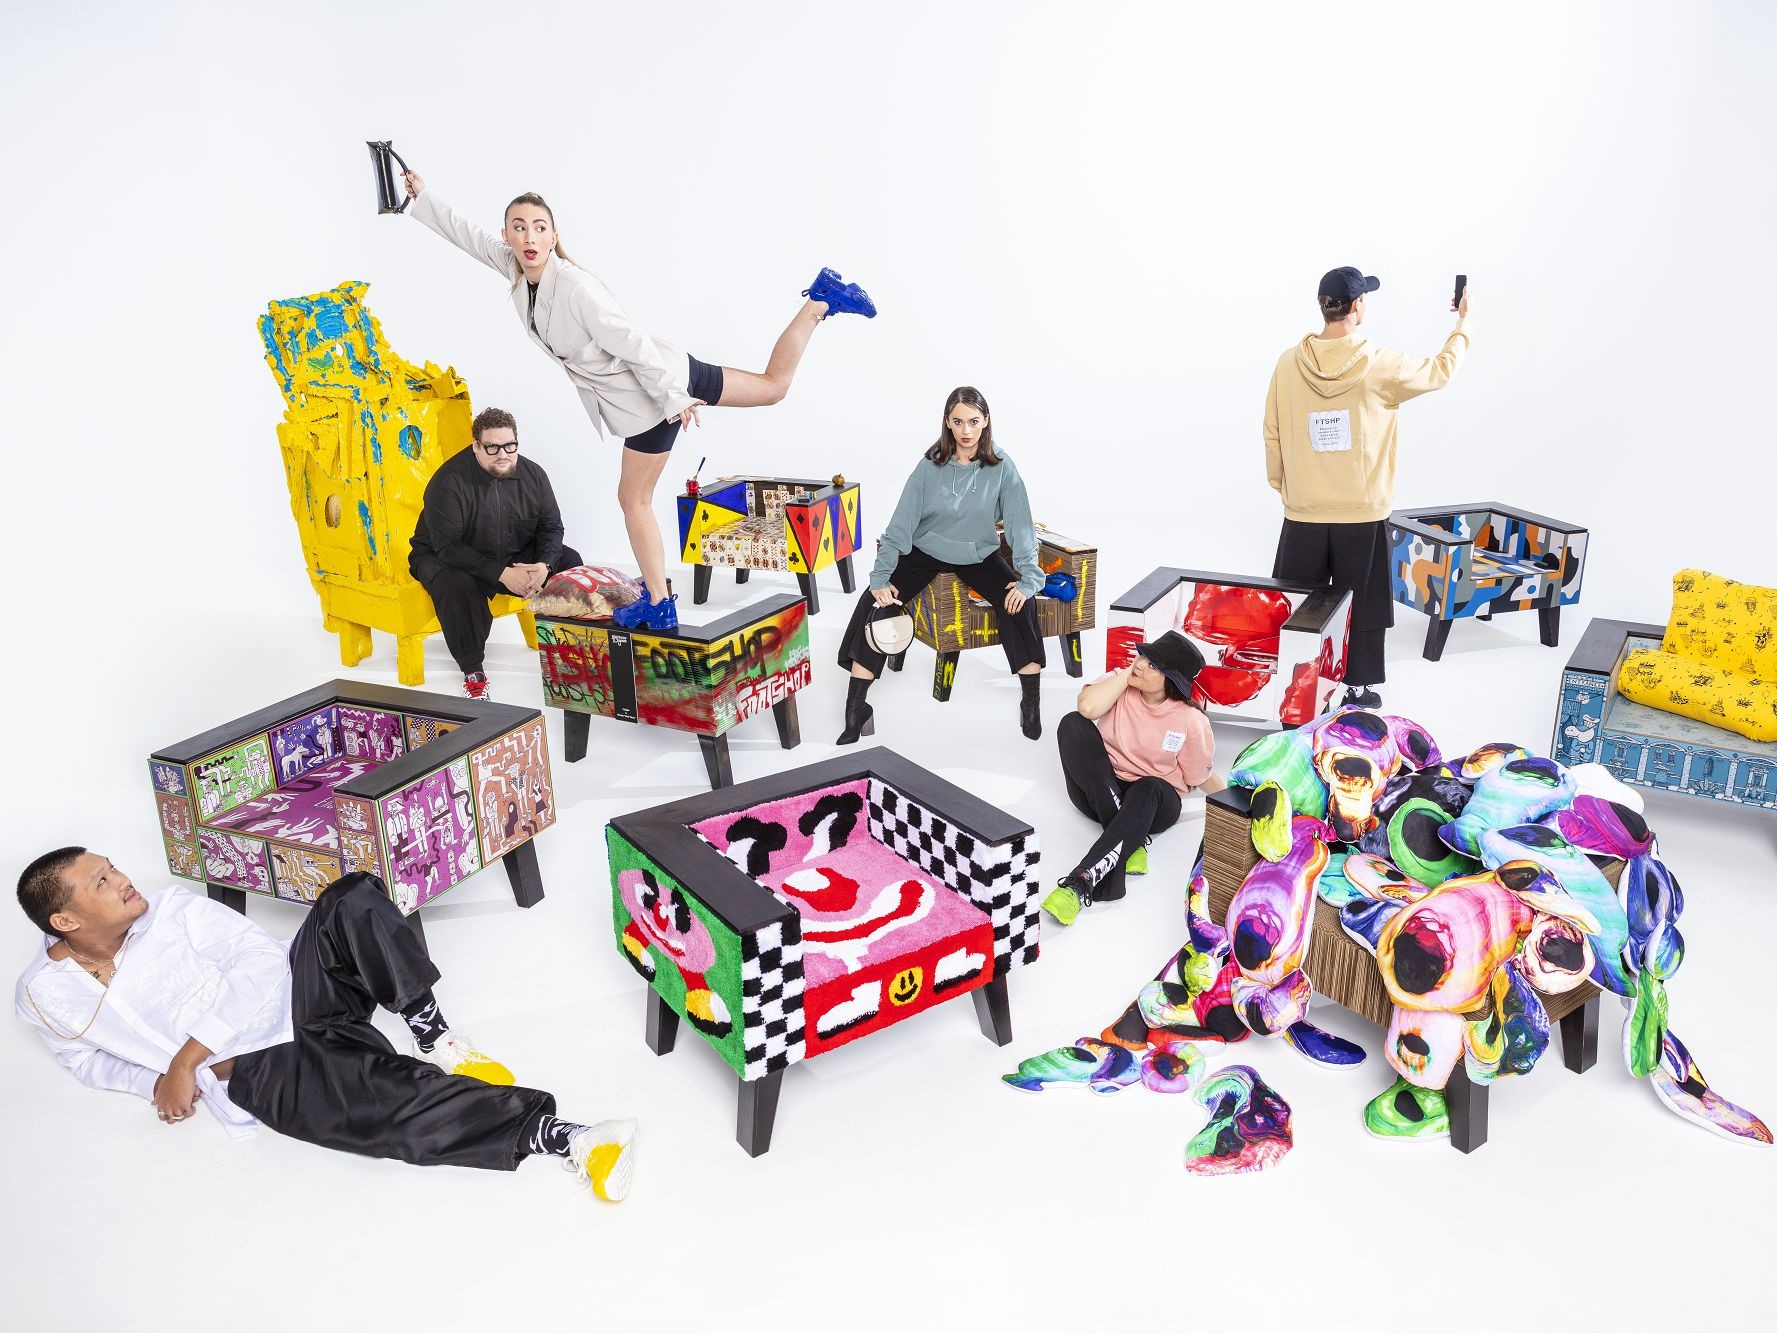 Footshop präsentiert 10 einzigartige Stühle aus Pappe, begleitet von maßgeschneiderten Turnschuhen und einer Reebok-Kollektion